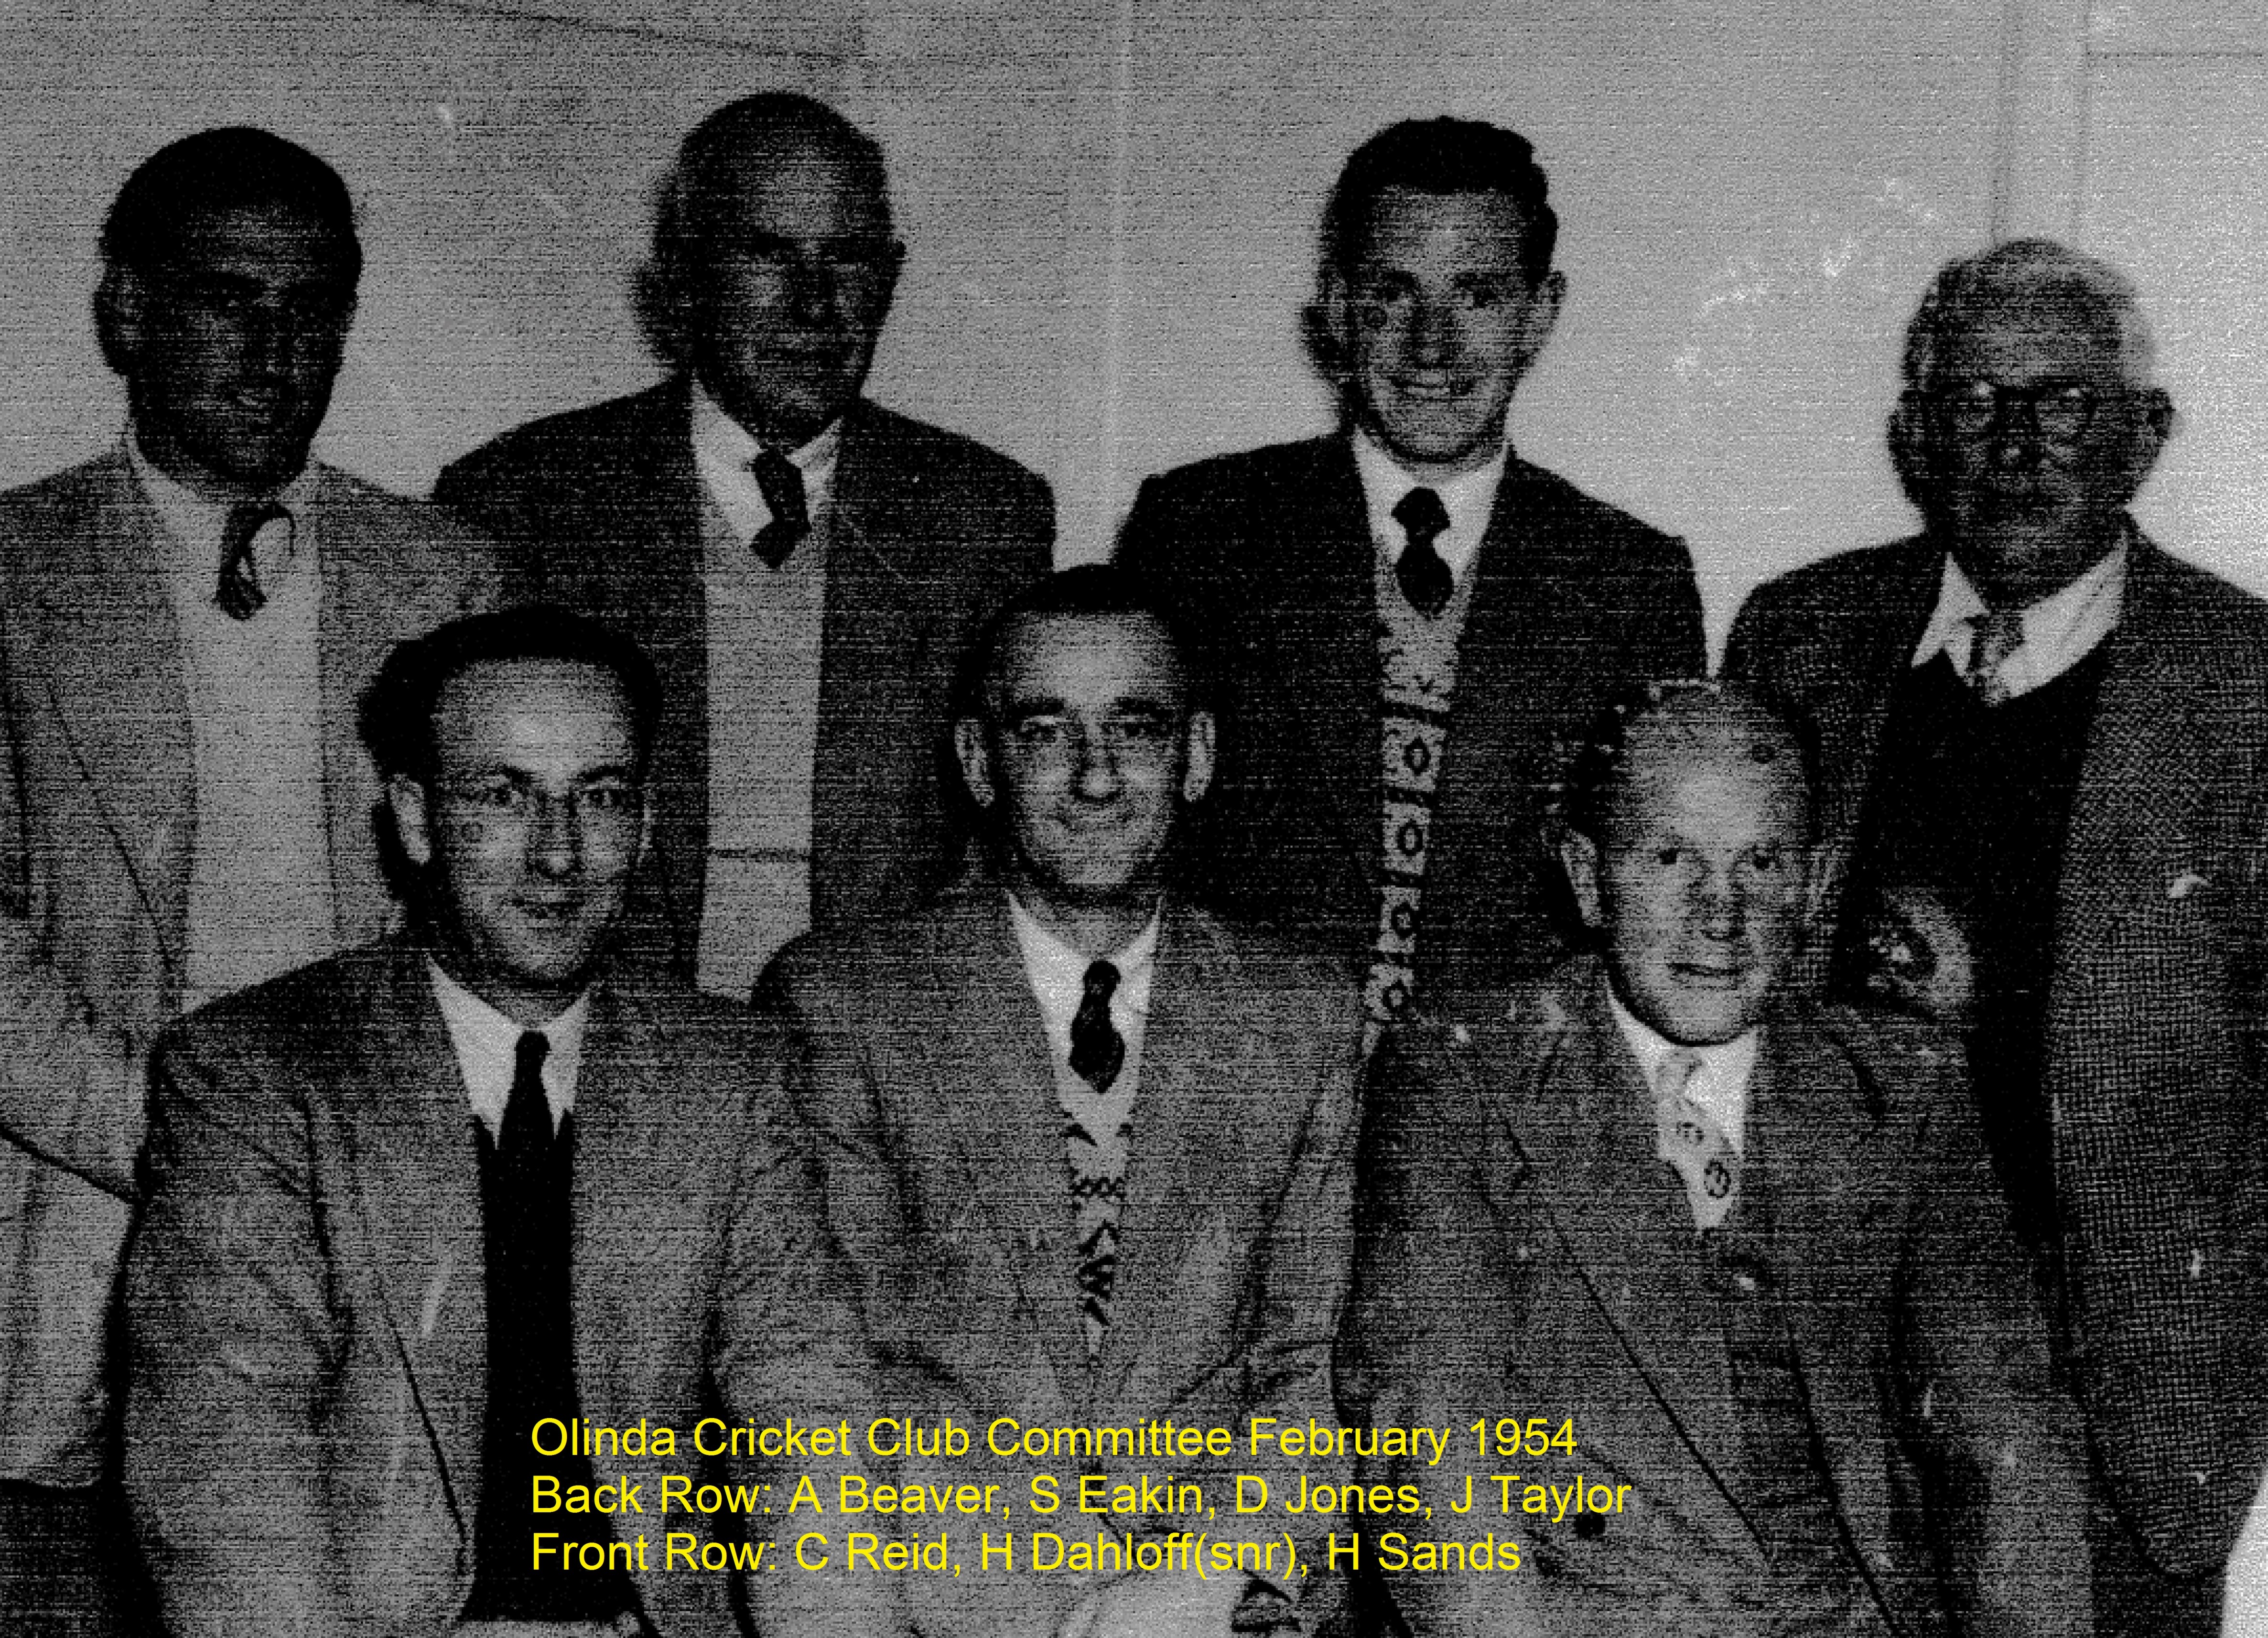 Olinda CC Committee 1954